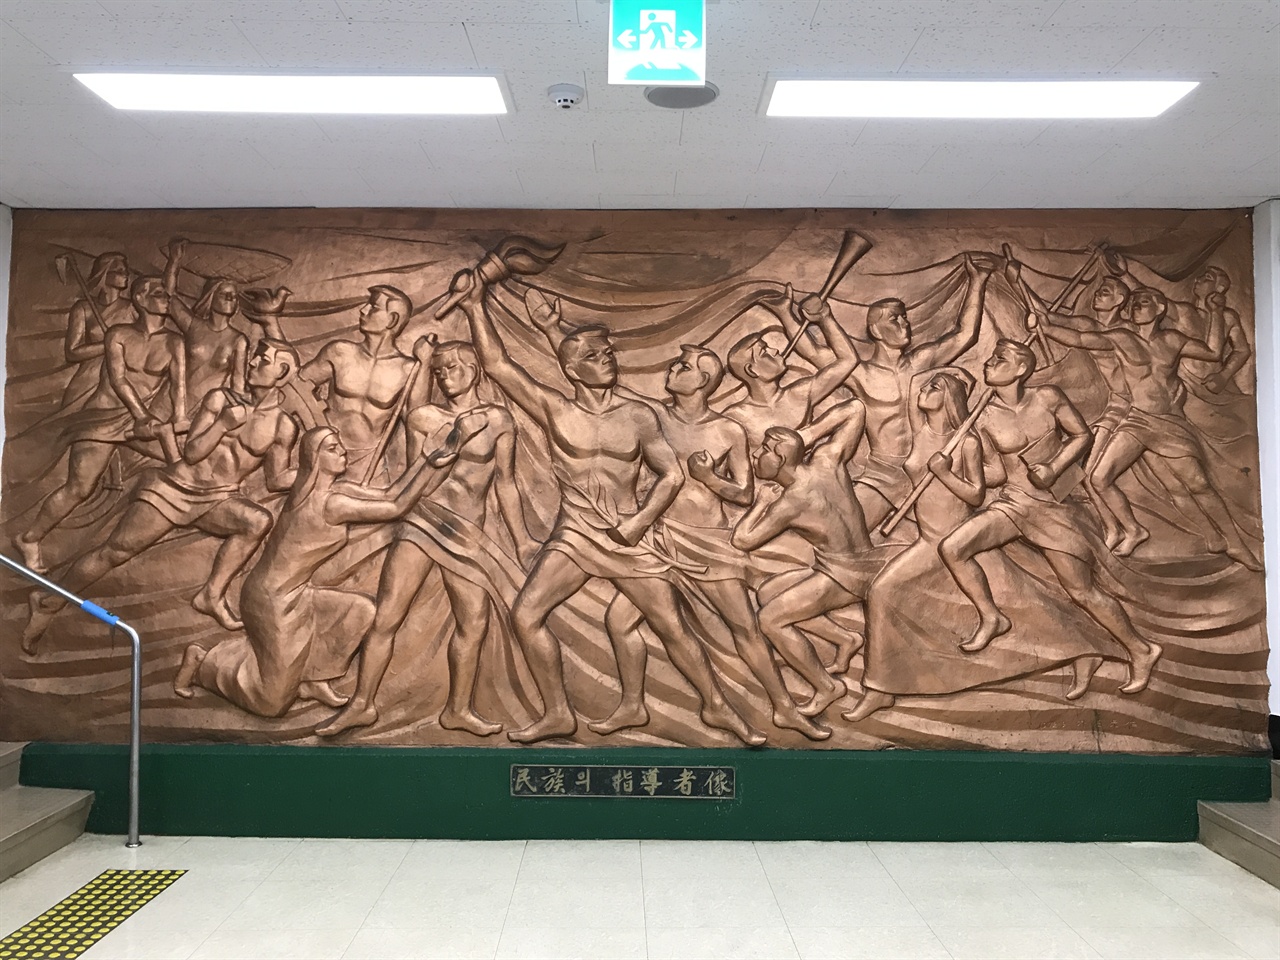 용산도서관 1층에서 2층으로 올라가는 중앙계단에 있는 이 작품은 1972년 9월 박석원이 만든 작품이다. 이곳이 민주공화당 중앙당사였음을 알려주는 유일한 흔적이다. 